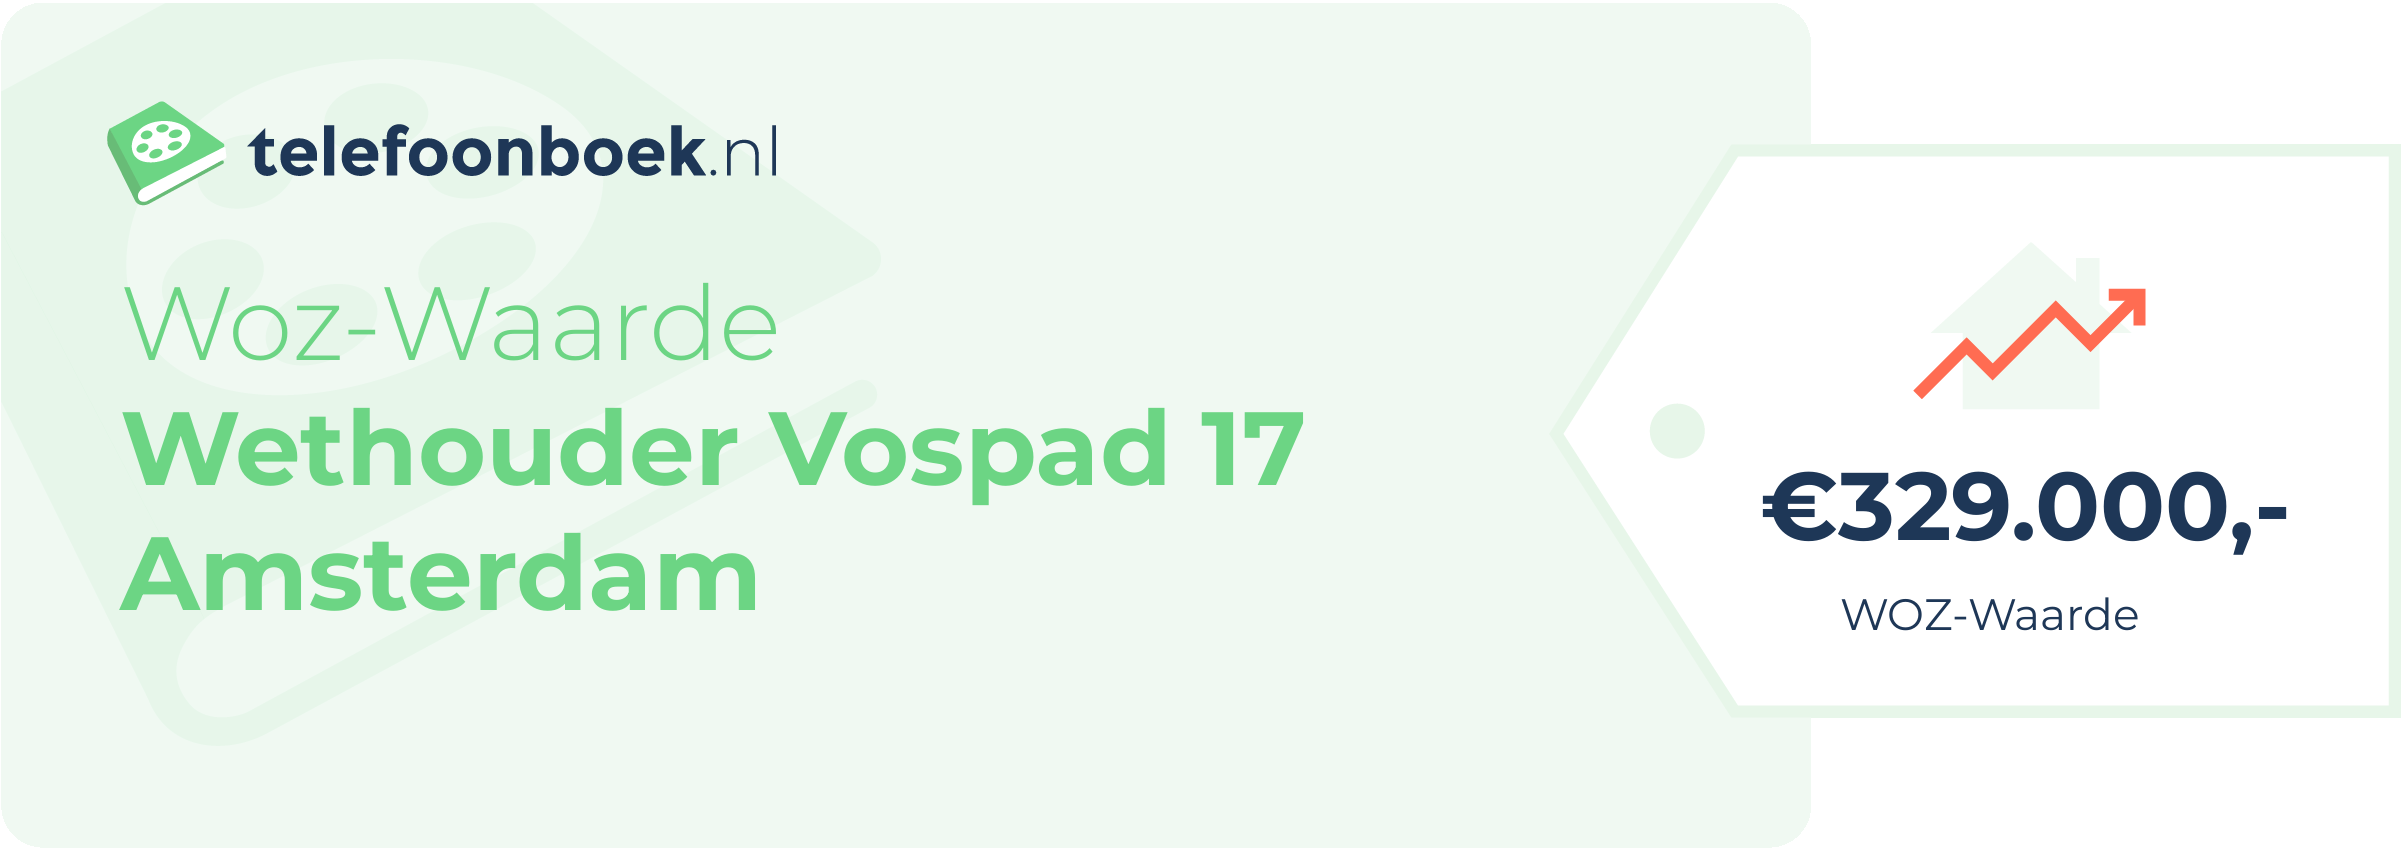 WOZ-waarde Wethouder Vospad 17 Amsterdam